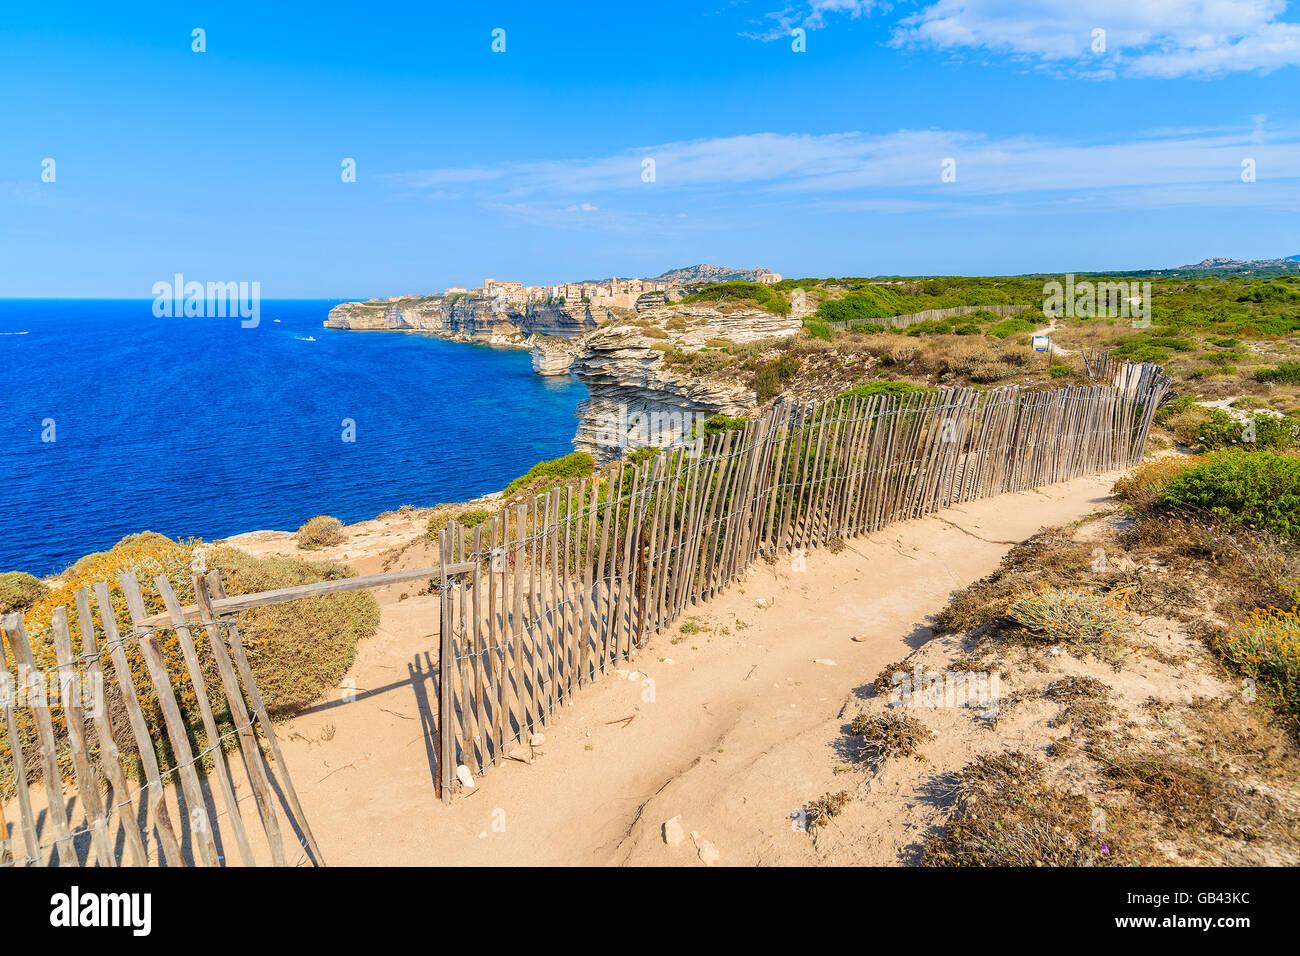 Sentier du littoral à Bonifacio vieille ville construite sur une falaise au-dessus de la mer, Corse, France Banque D'Images